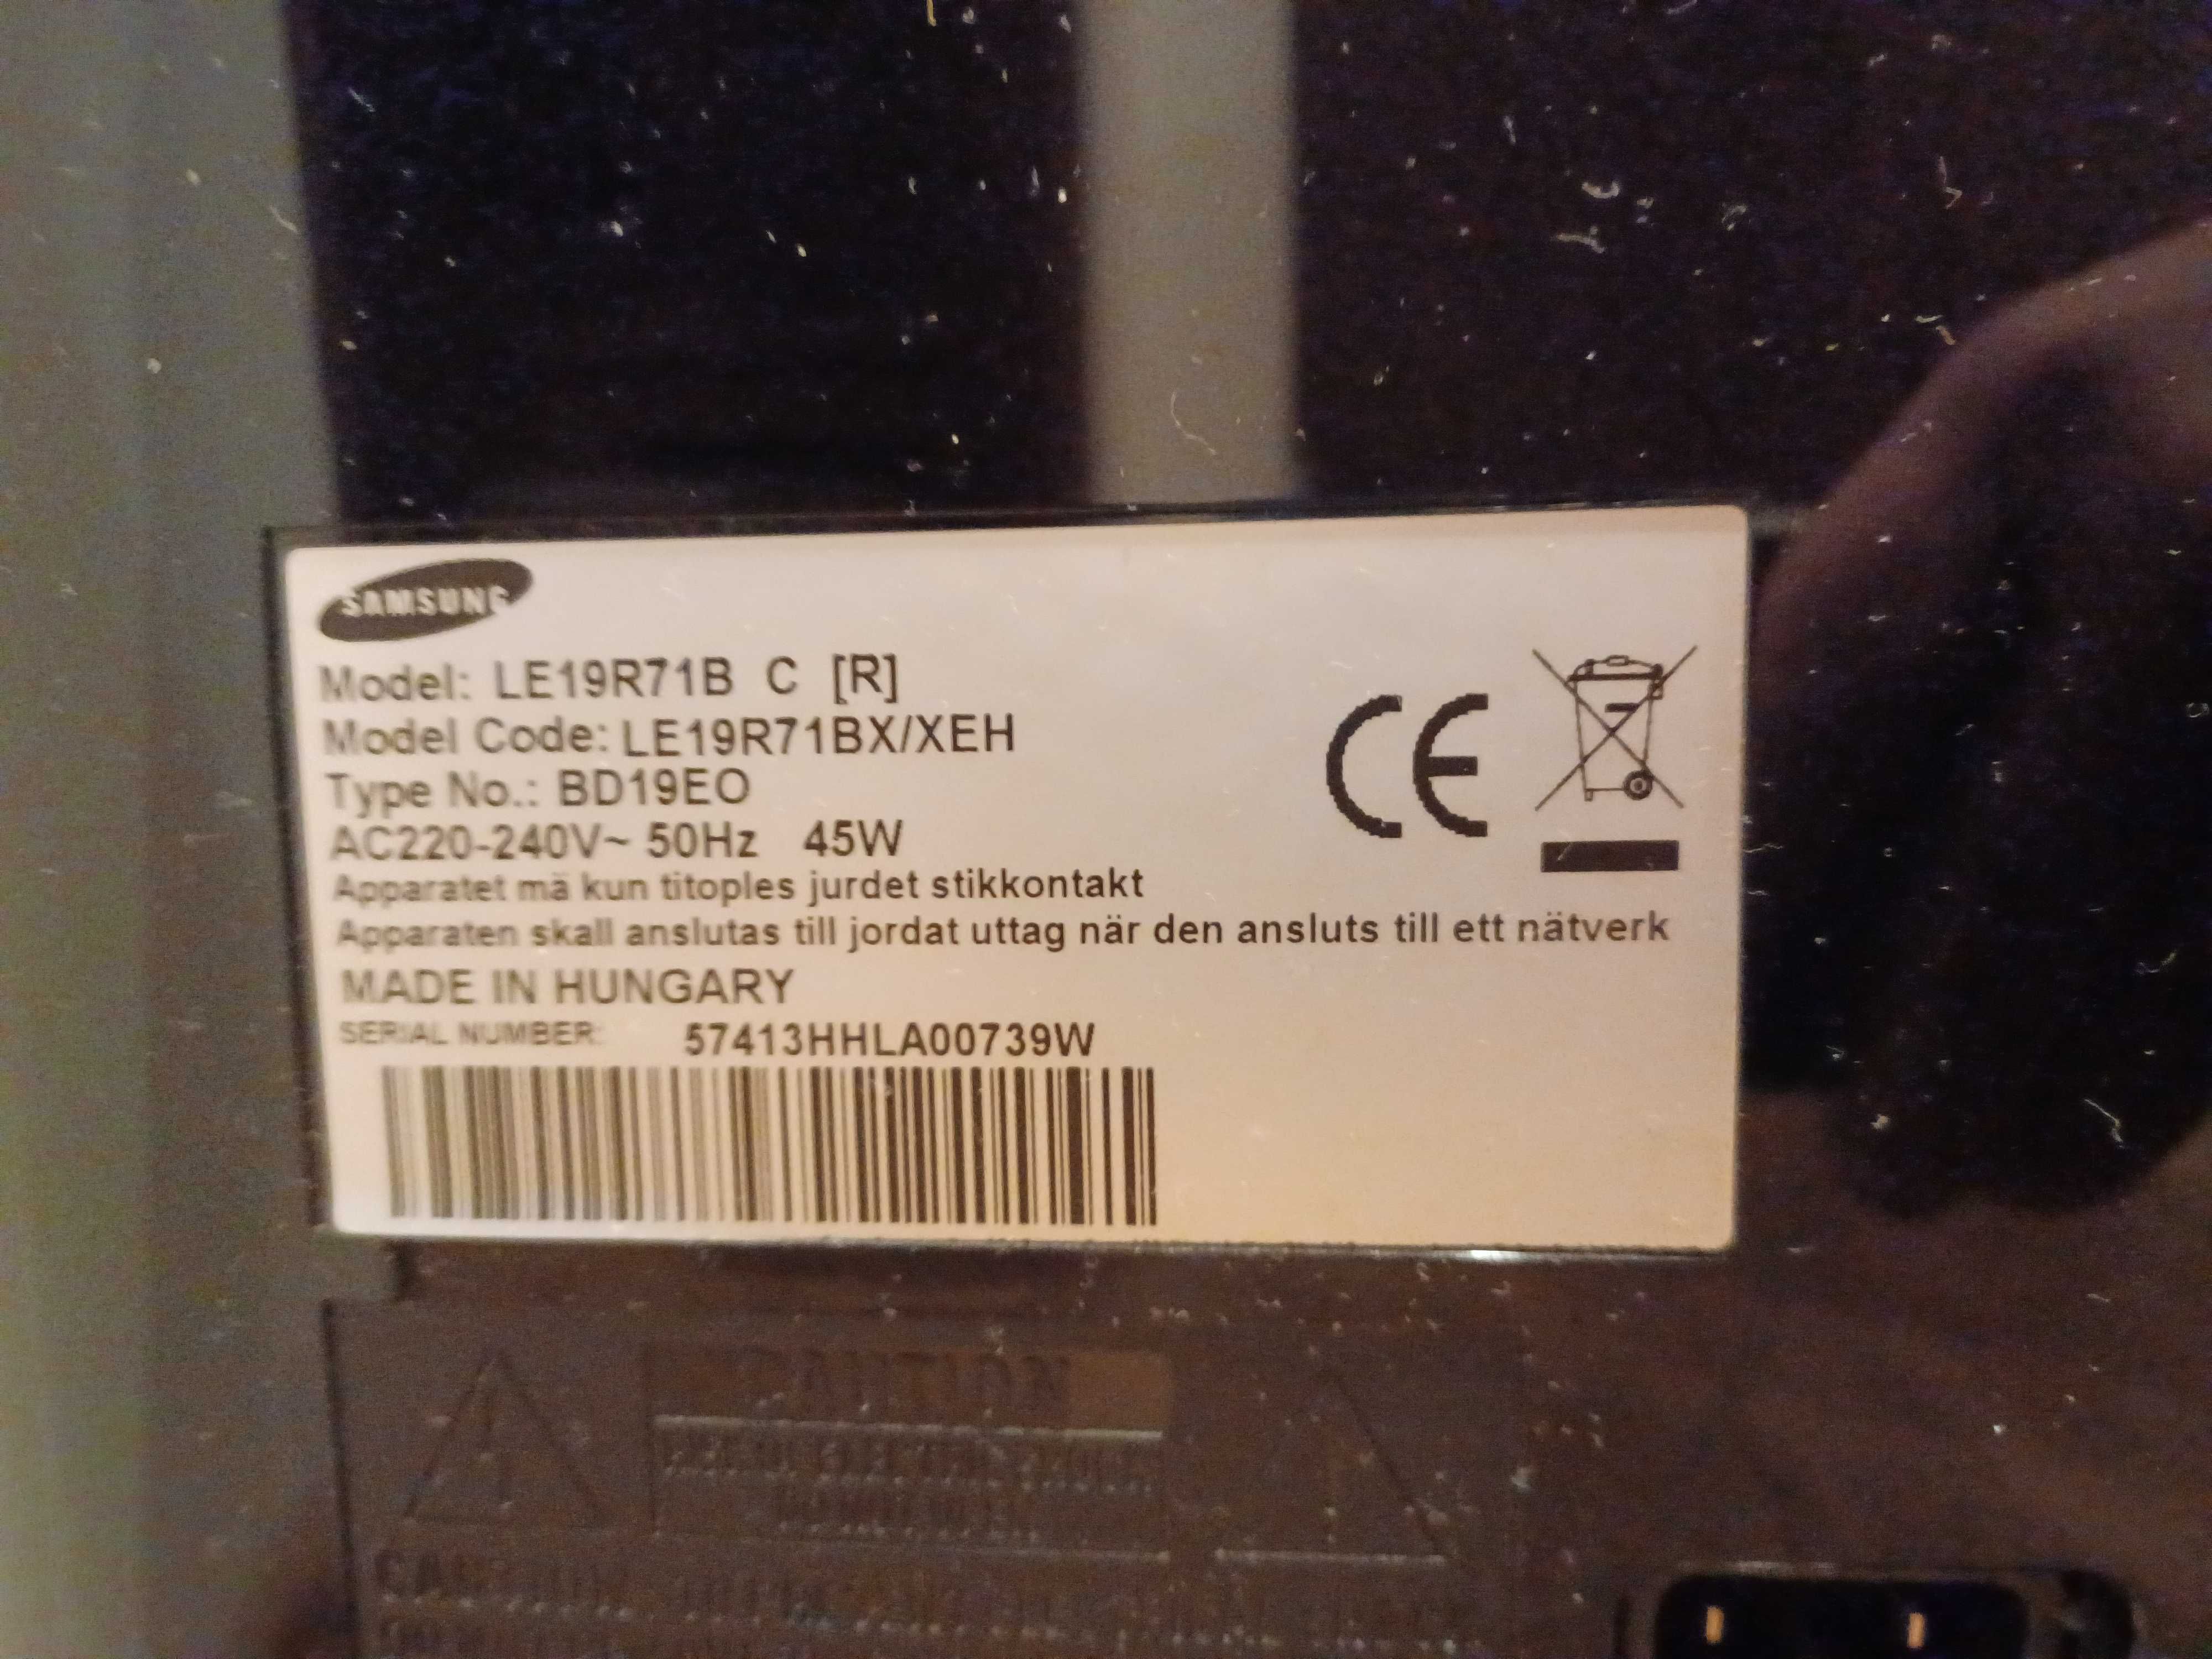 Samsung 19'' LE19R71B LCD